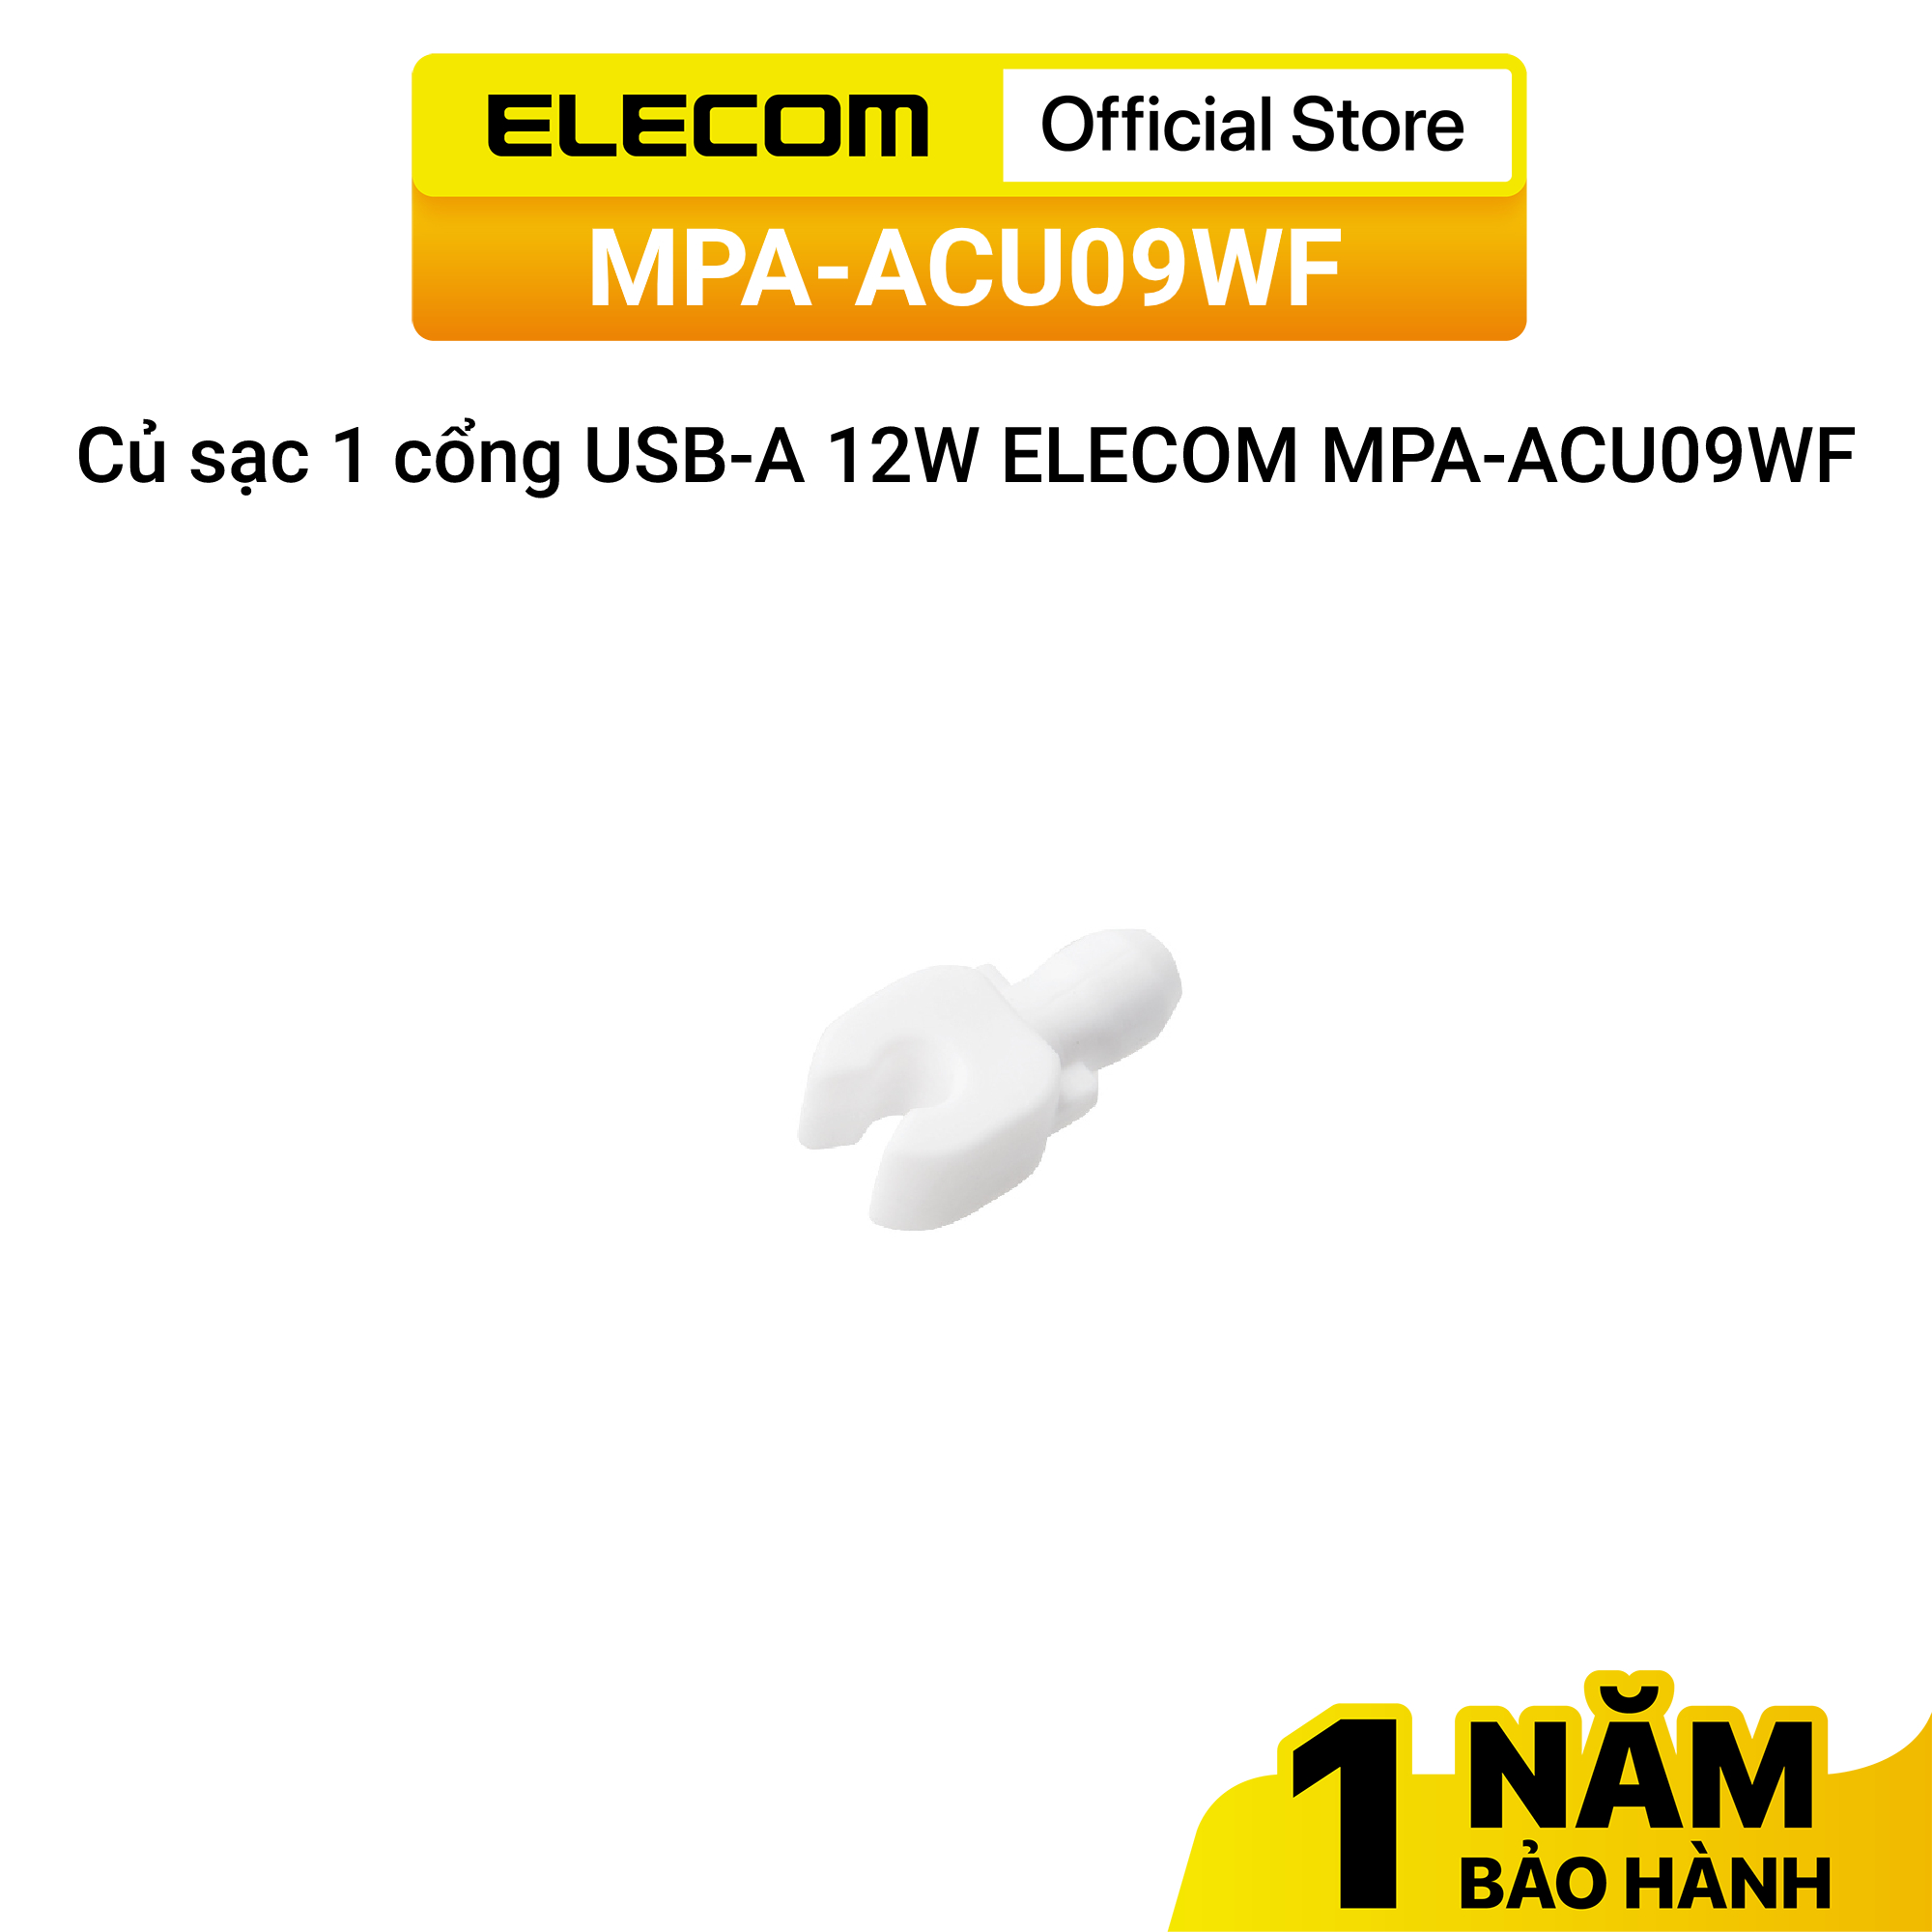 Củ sạc 1 cổng USB-A 12W ELECOM MPA-ACU09WF - Hàng chính hãng